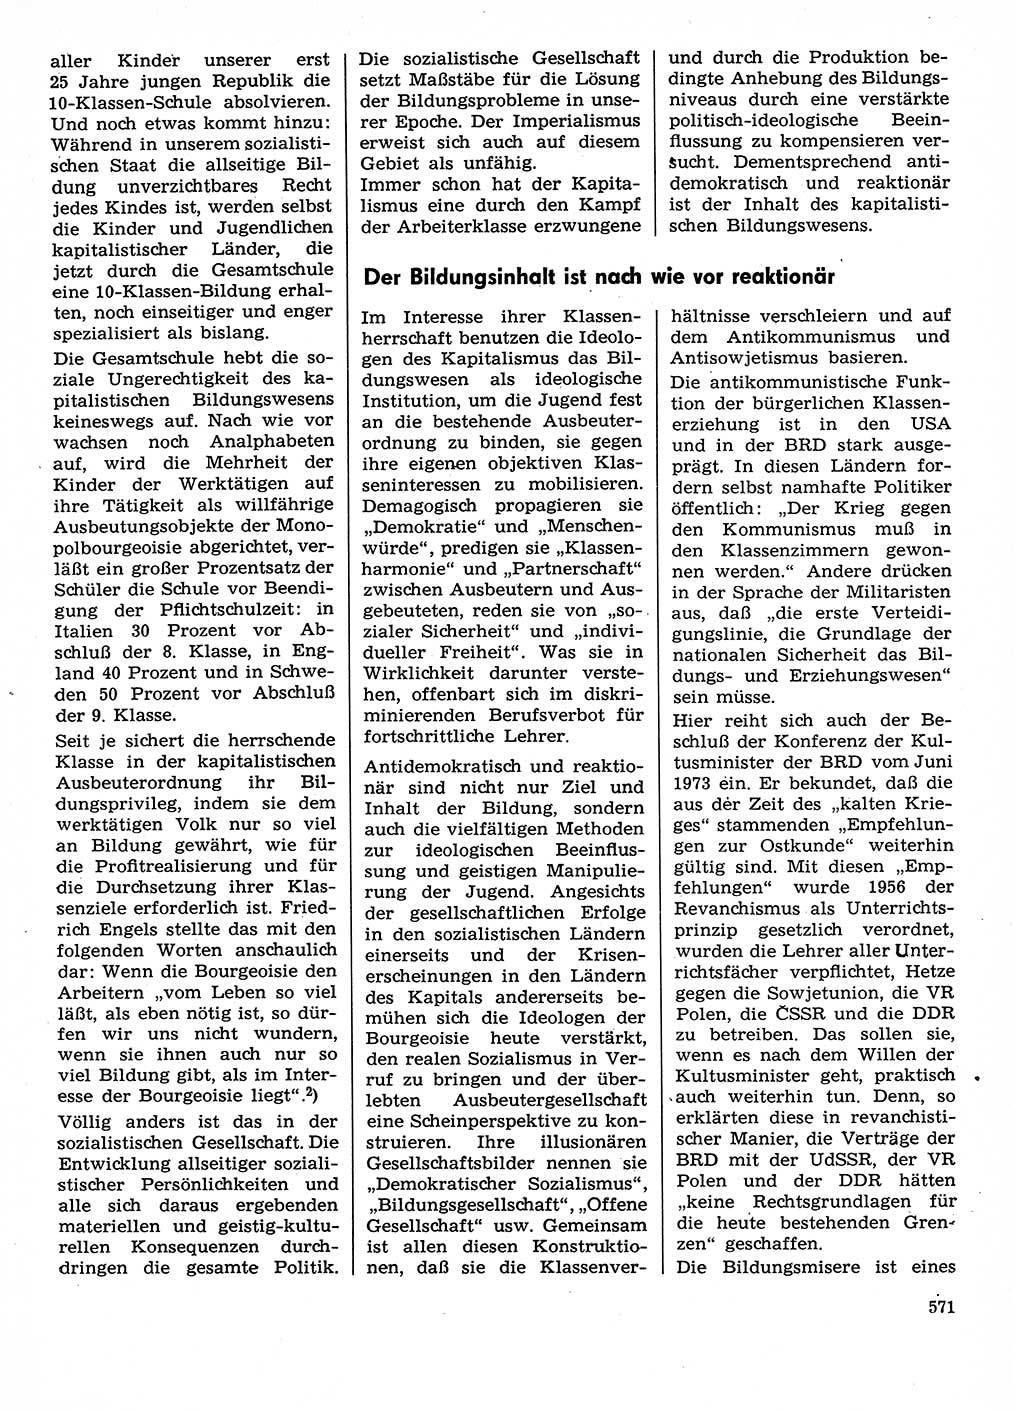 Neuer Weg (NW), Organ des Zentralkomitees (ZK) der SED (Sozialistische Einheitspartei Deutschlands) für Fragen des Parteilebens, 29. Jahrgang [Deutsche Demokratische Republik (DDR)] 1974, Seite 571 (NW ZK SED DDR 1974, S. 571)